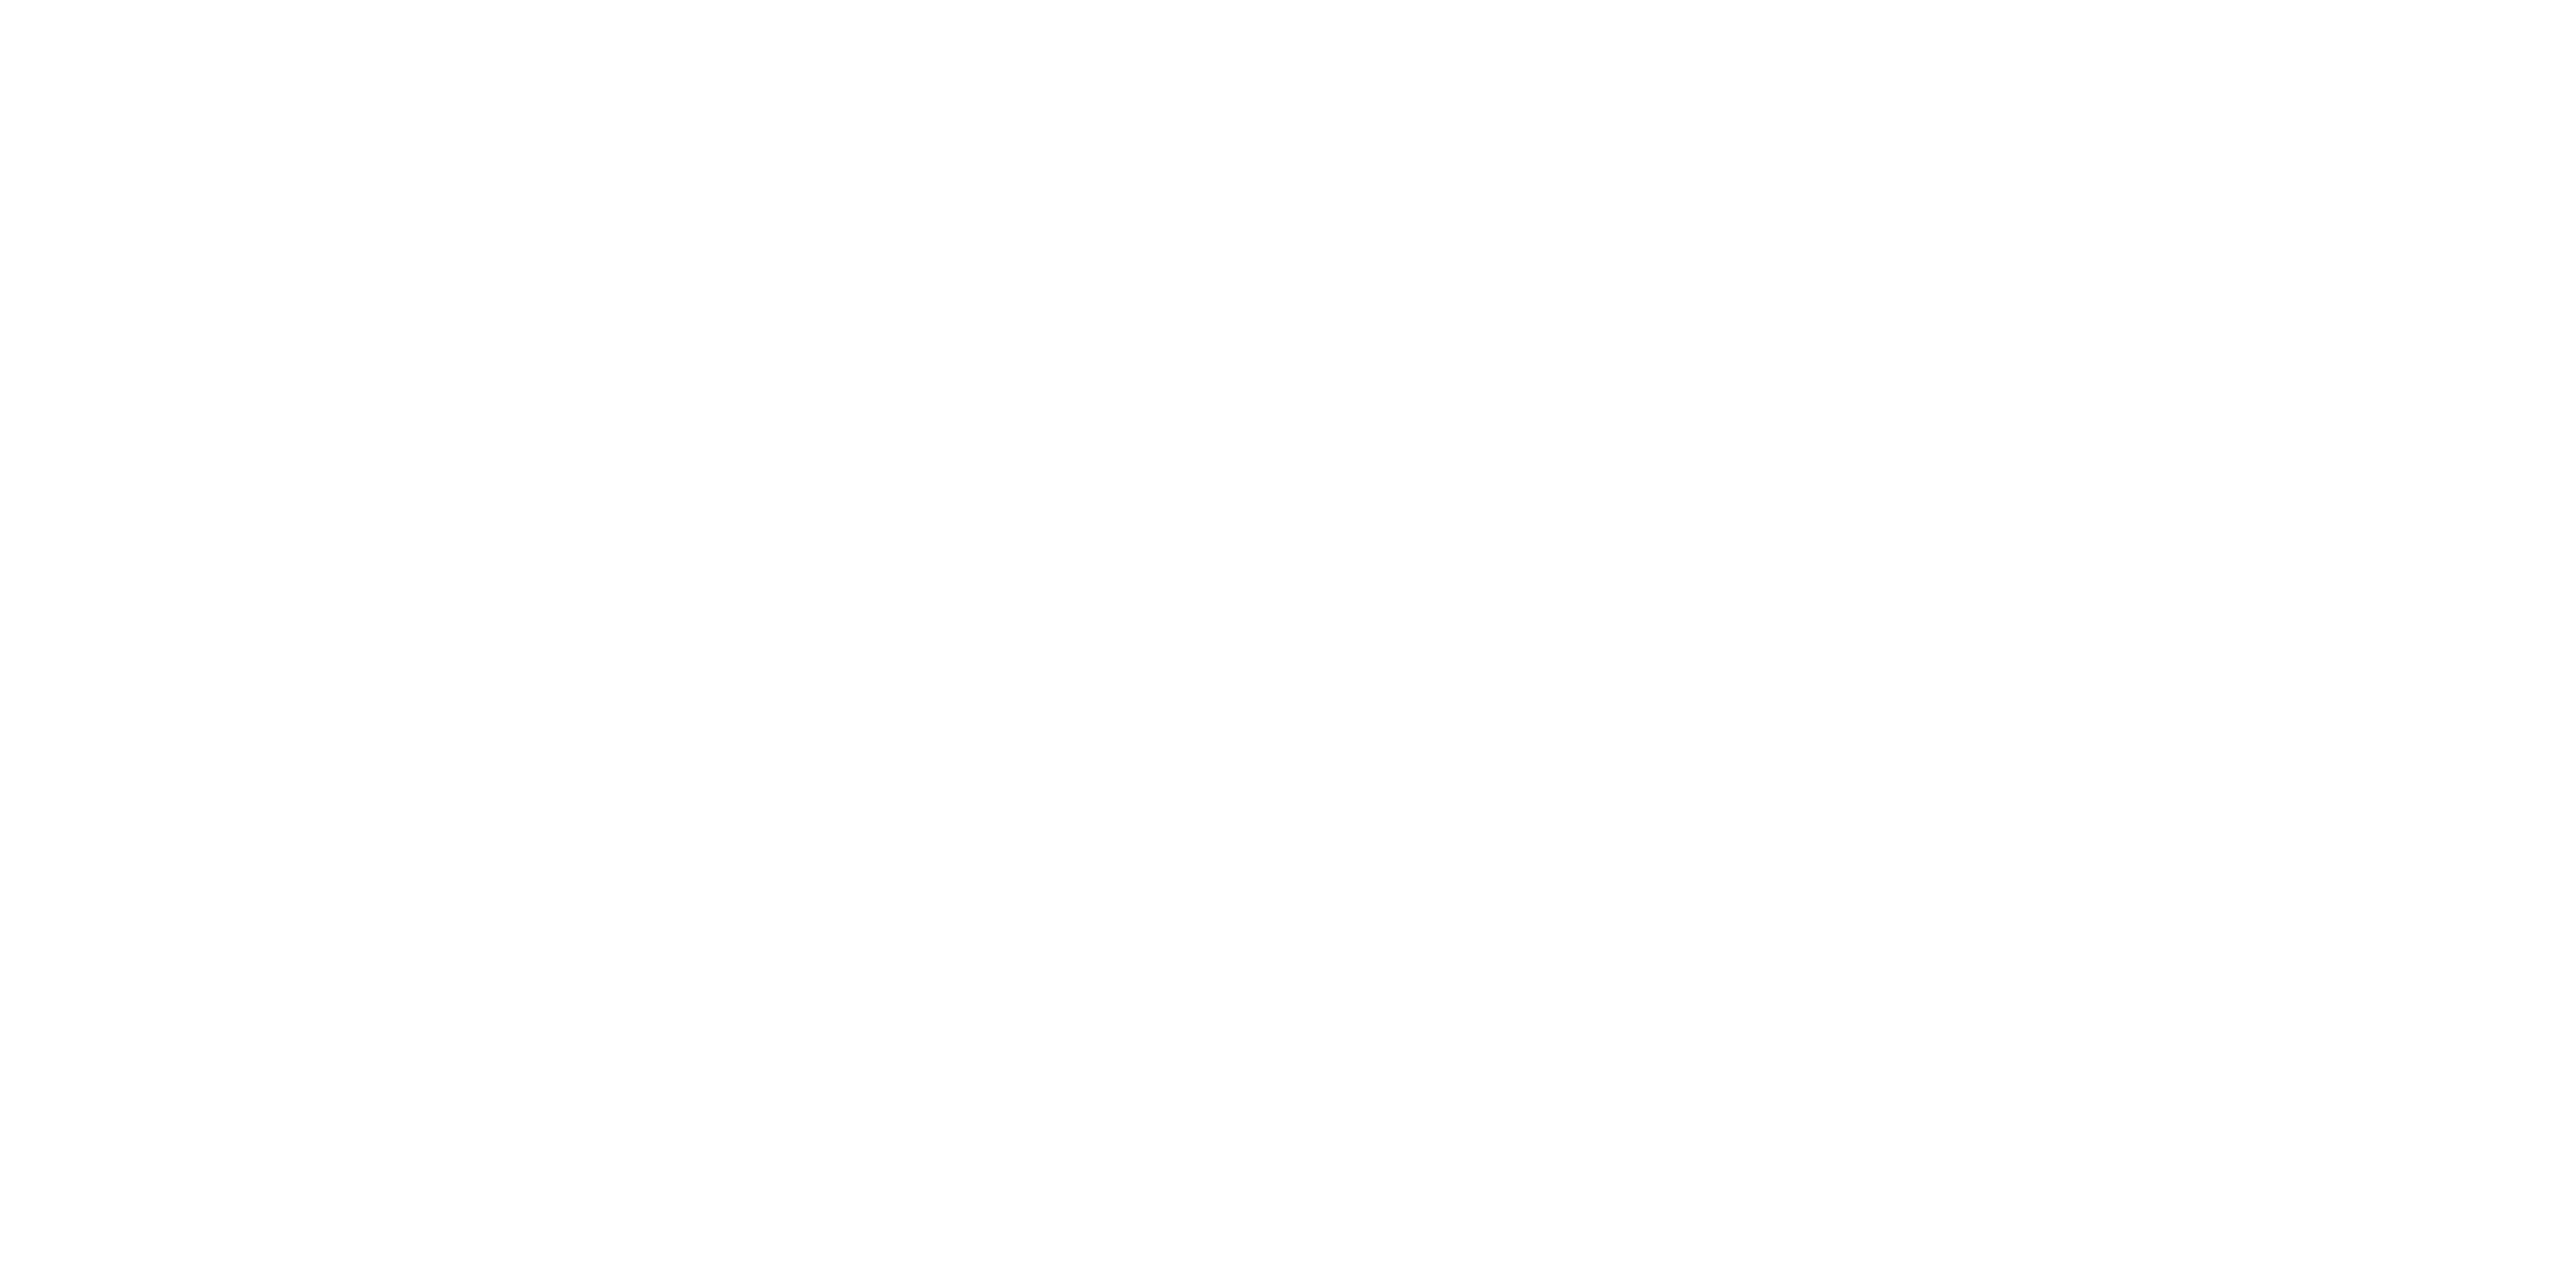 Wagamama logo white